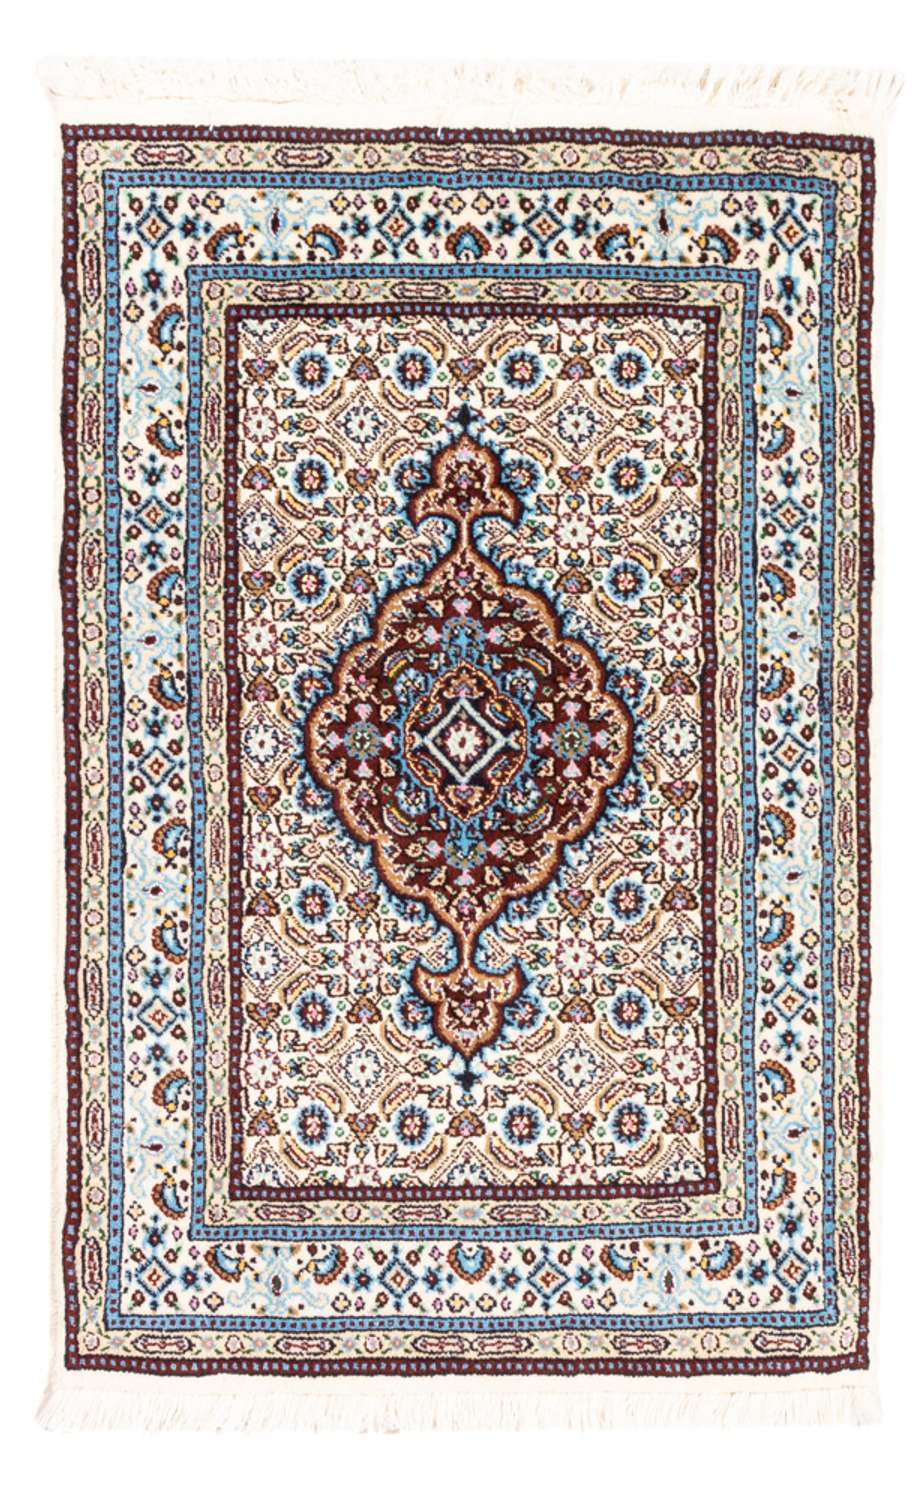 Tapis persan - Classique - Royal - 90 x 60 cm - rouge foncé